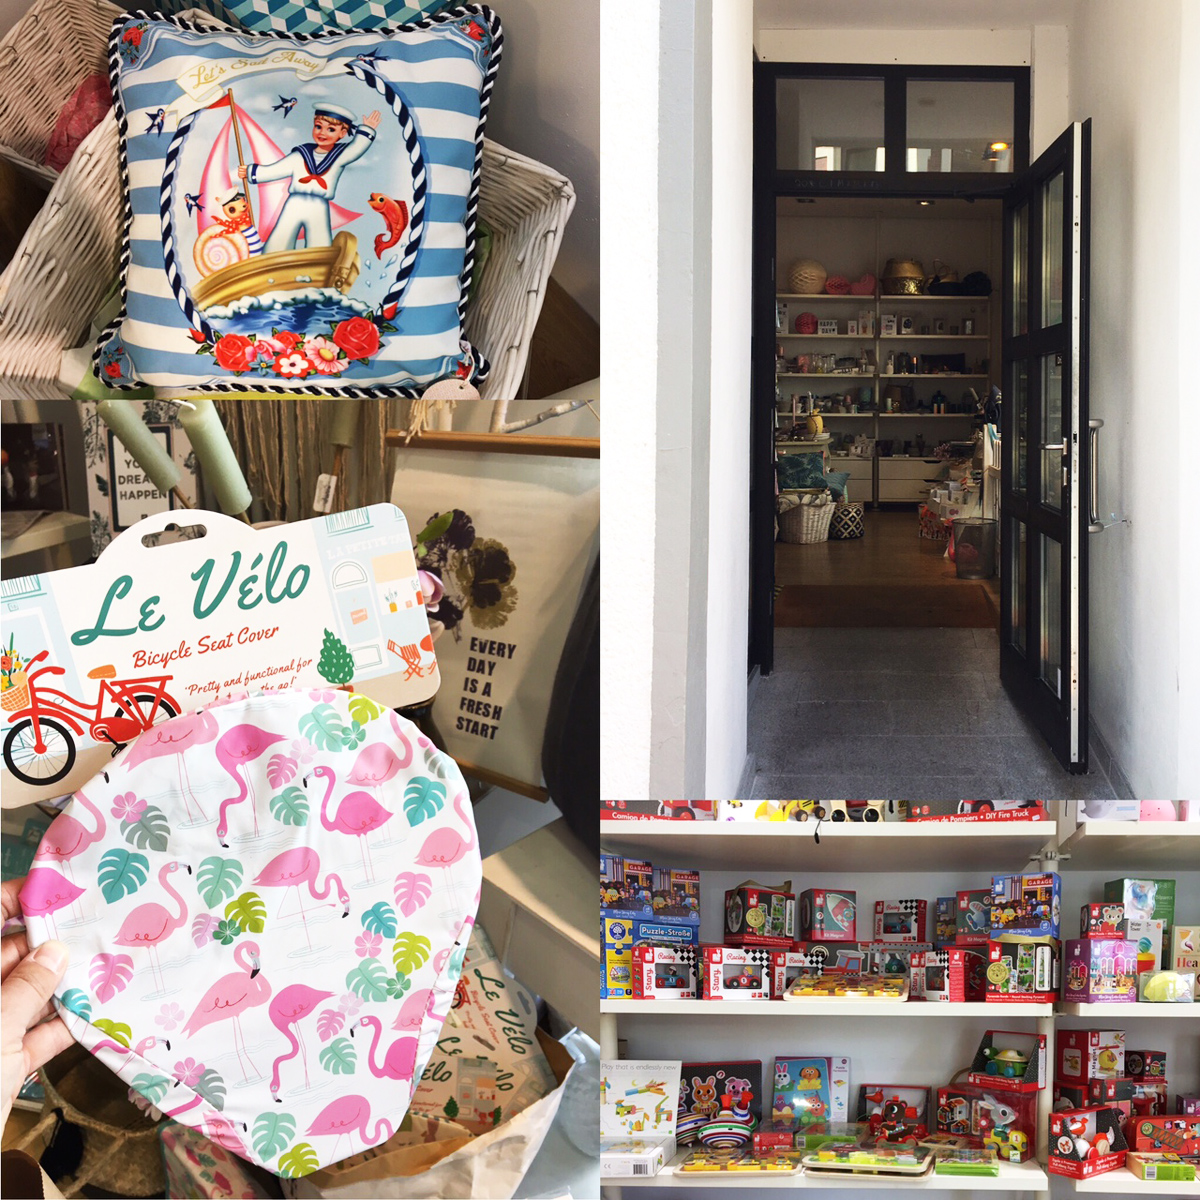 Der Shop Füchslein & Co bietet Kinderspielzeug, Einrichtung und Kleidung